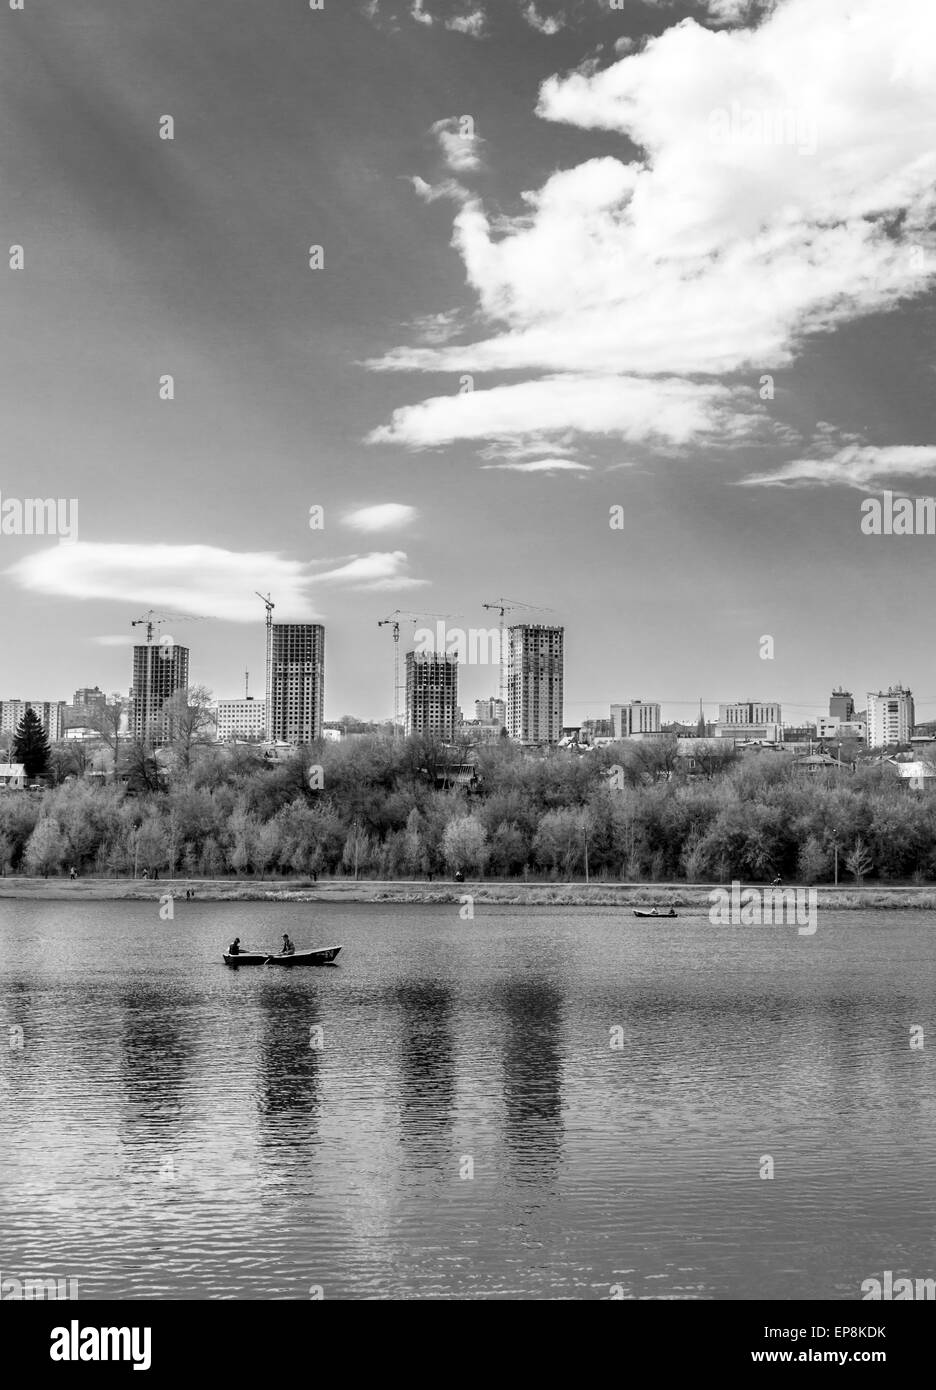 Unica barca a remi su un lago con alto edificio di appartamenti in bianco e nero Foto Stock